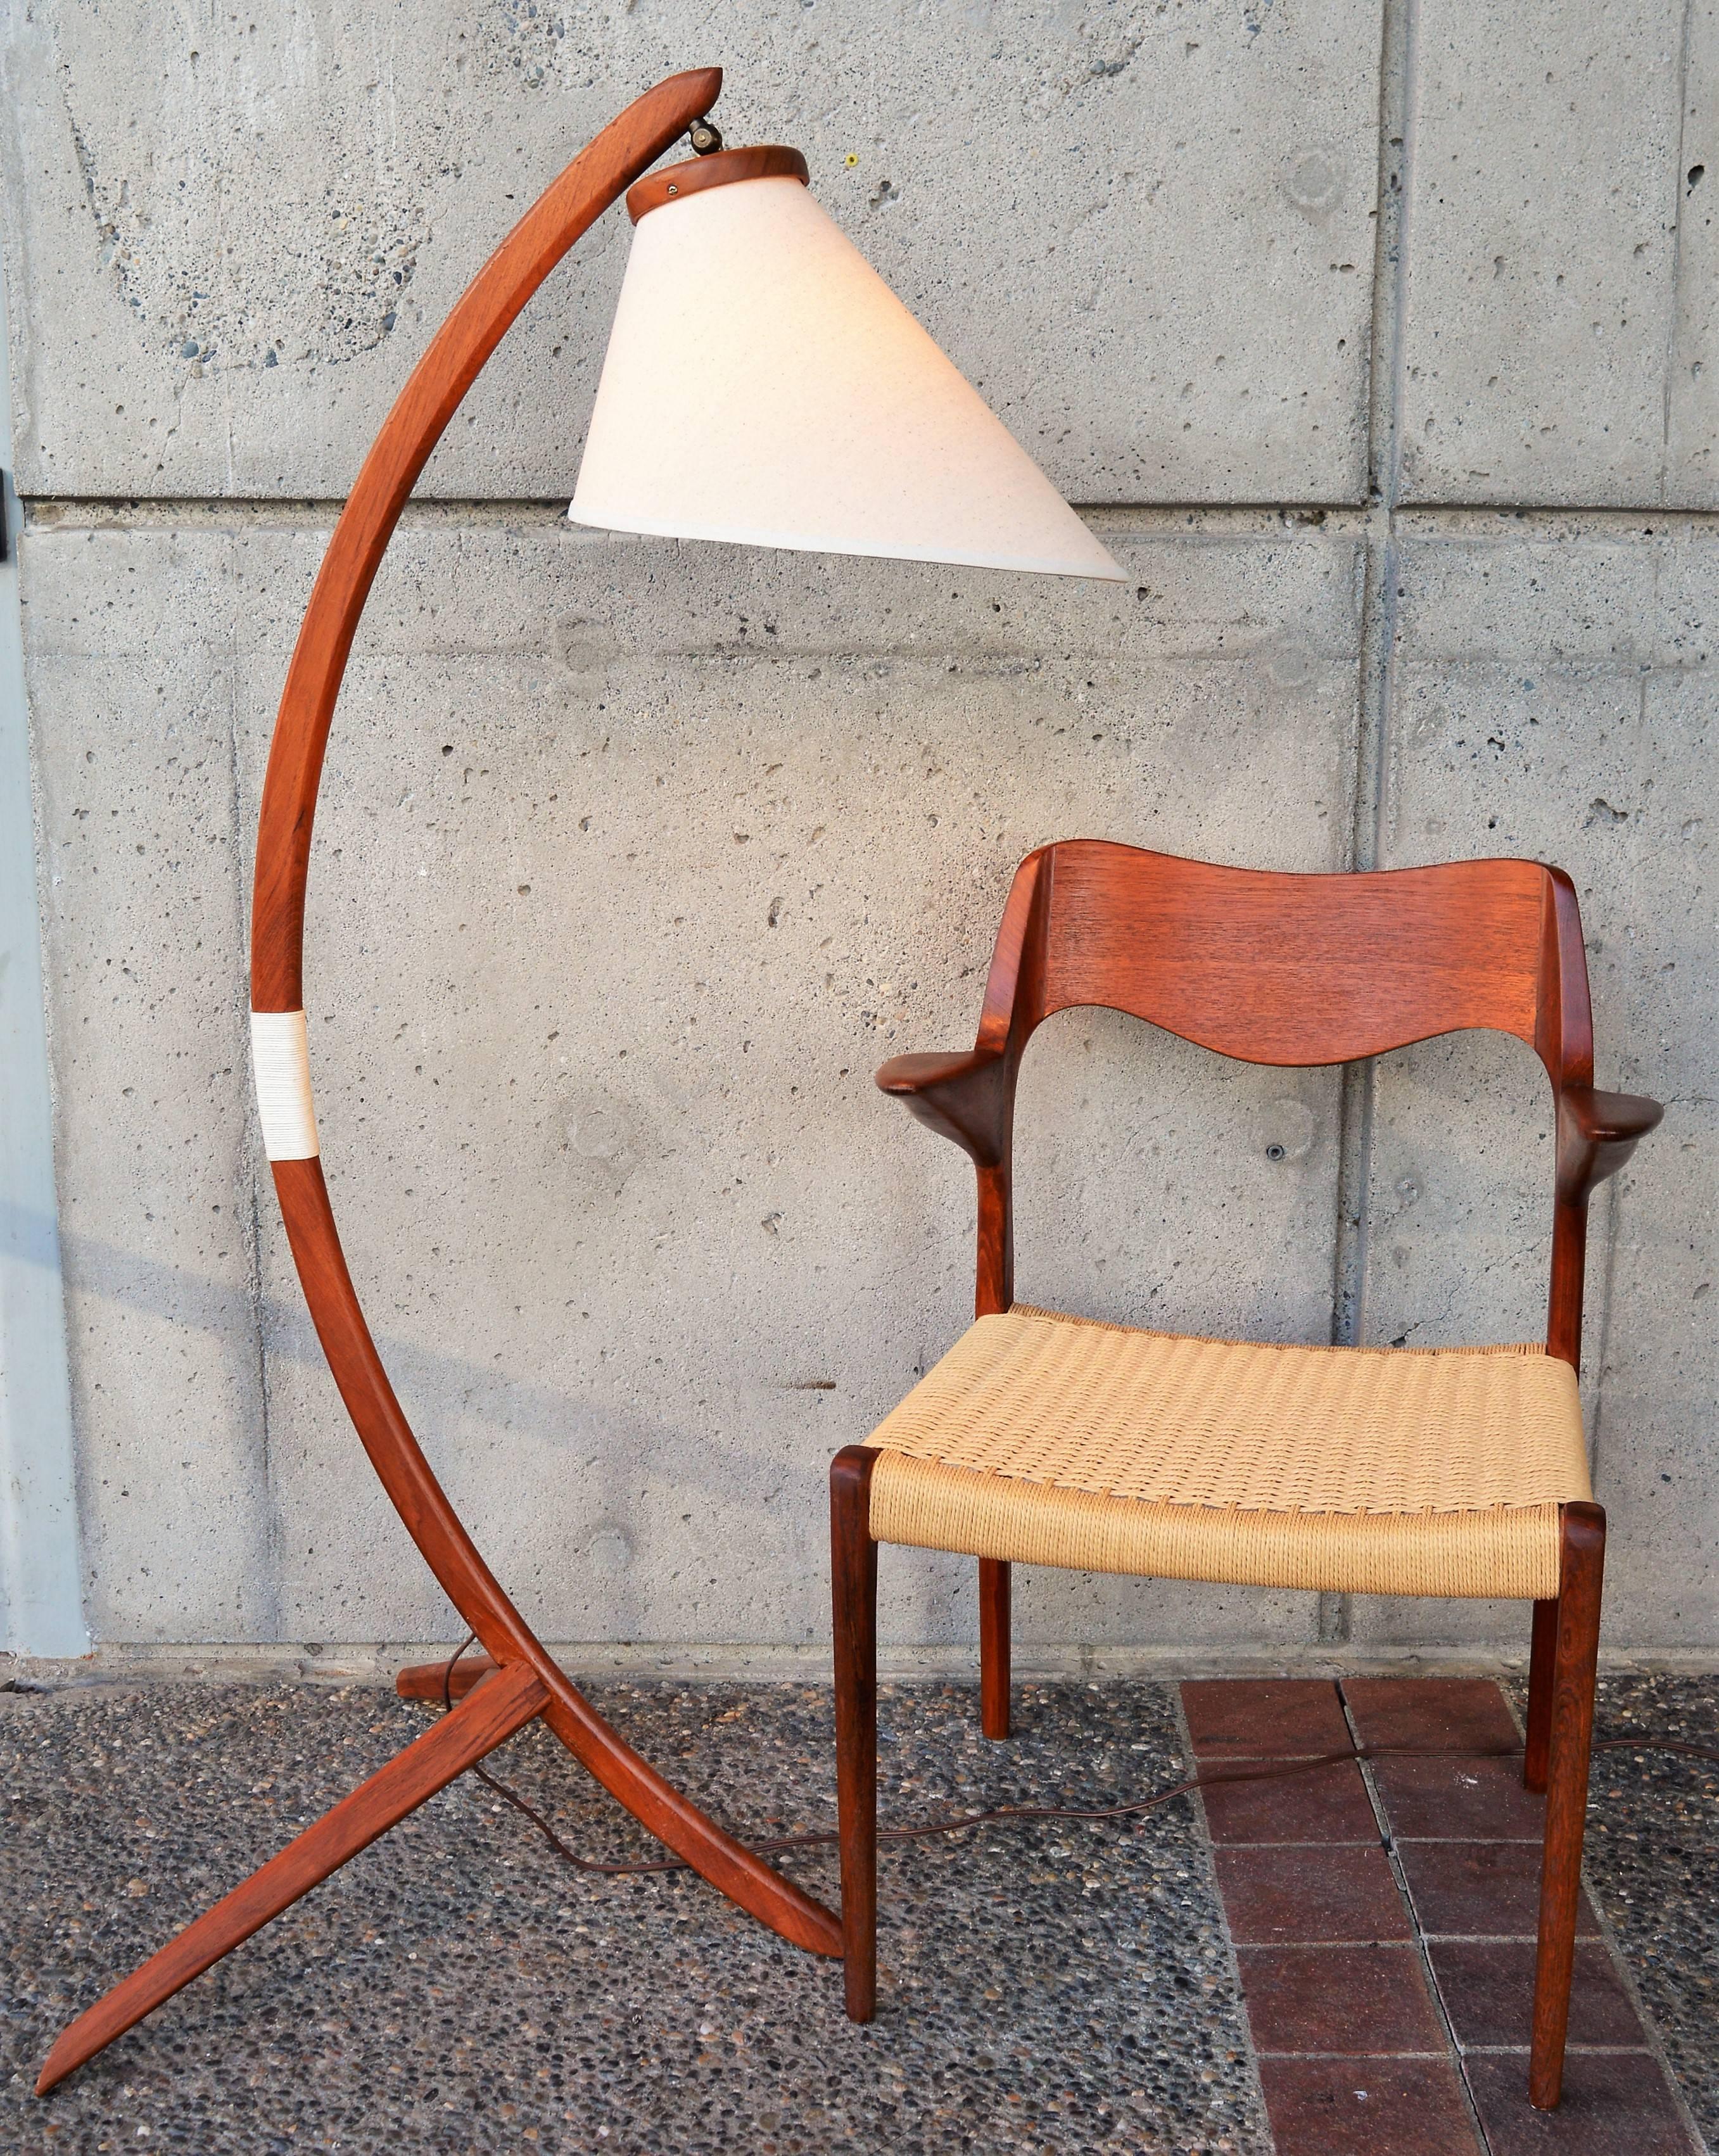 Ce lampadaire moderne danois iconique en teck, dans le style de Rispal, est si spectaculaire qu'il vole la vedette ! En excellent état et fraîchement huilée, la lampe est surnommée 